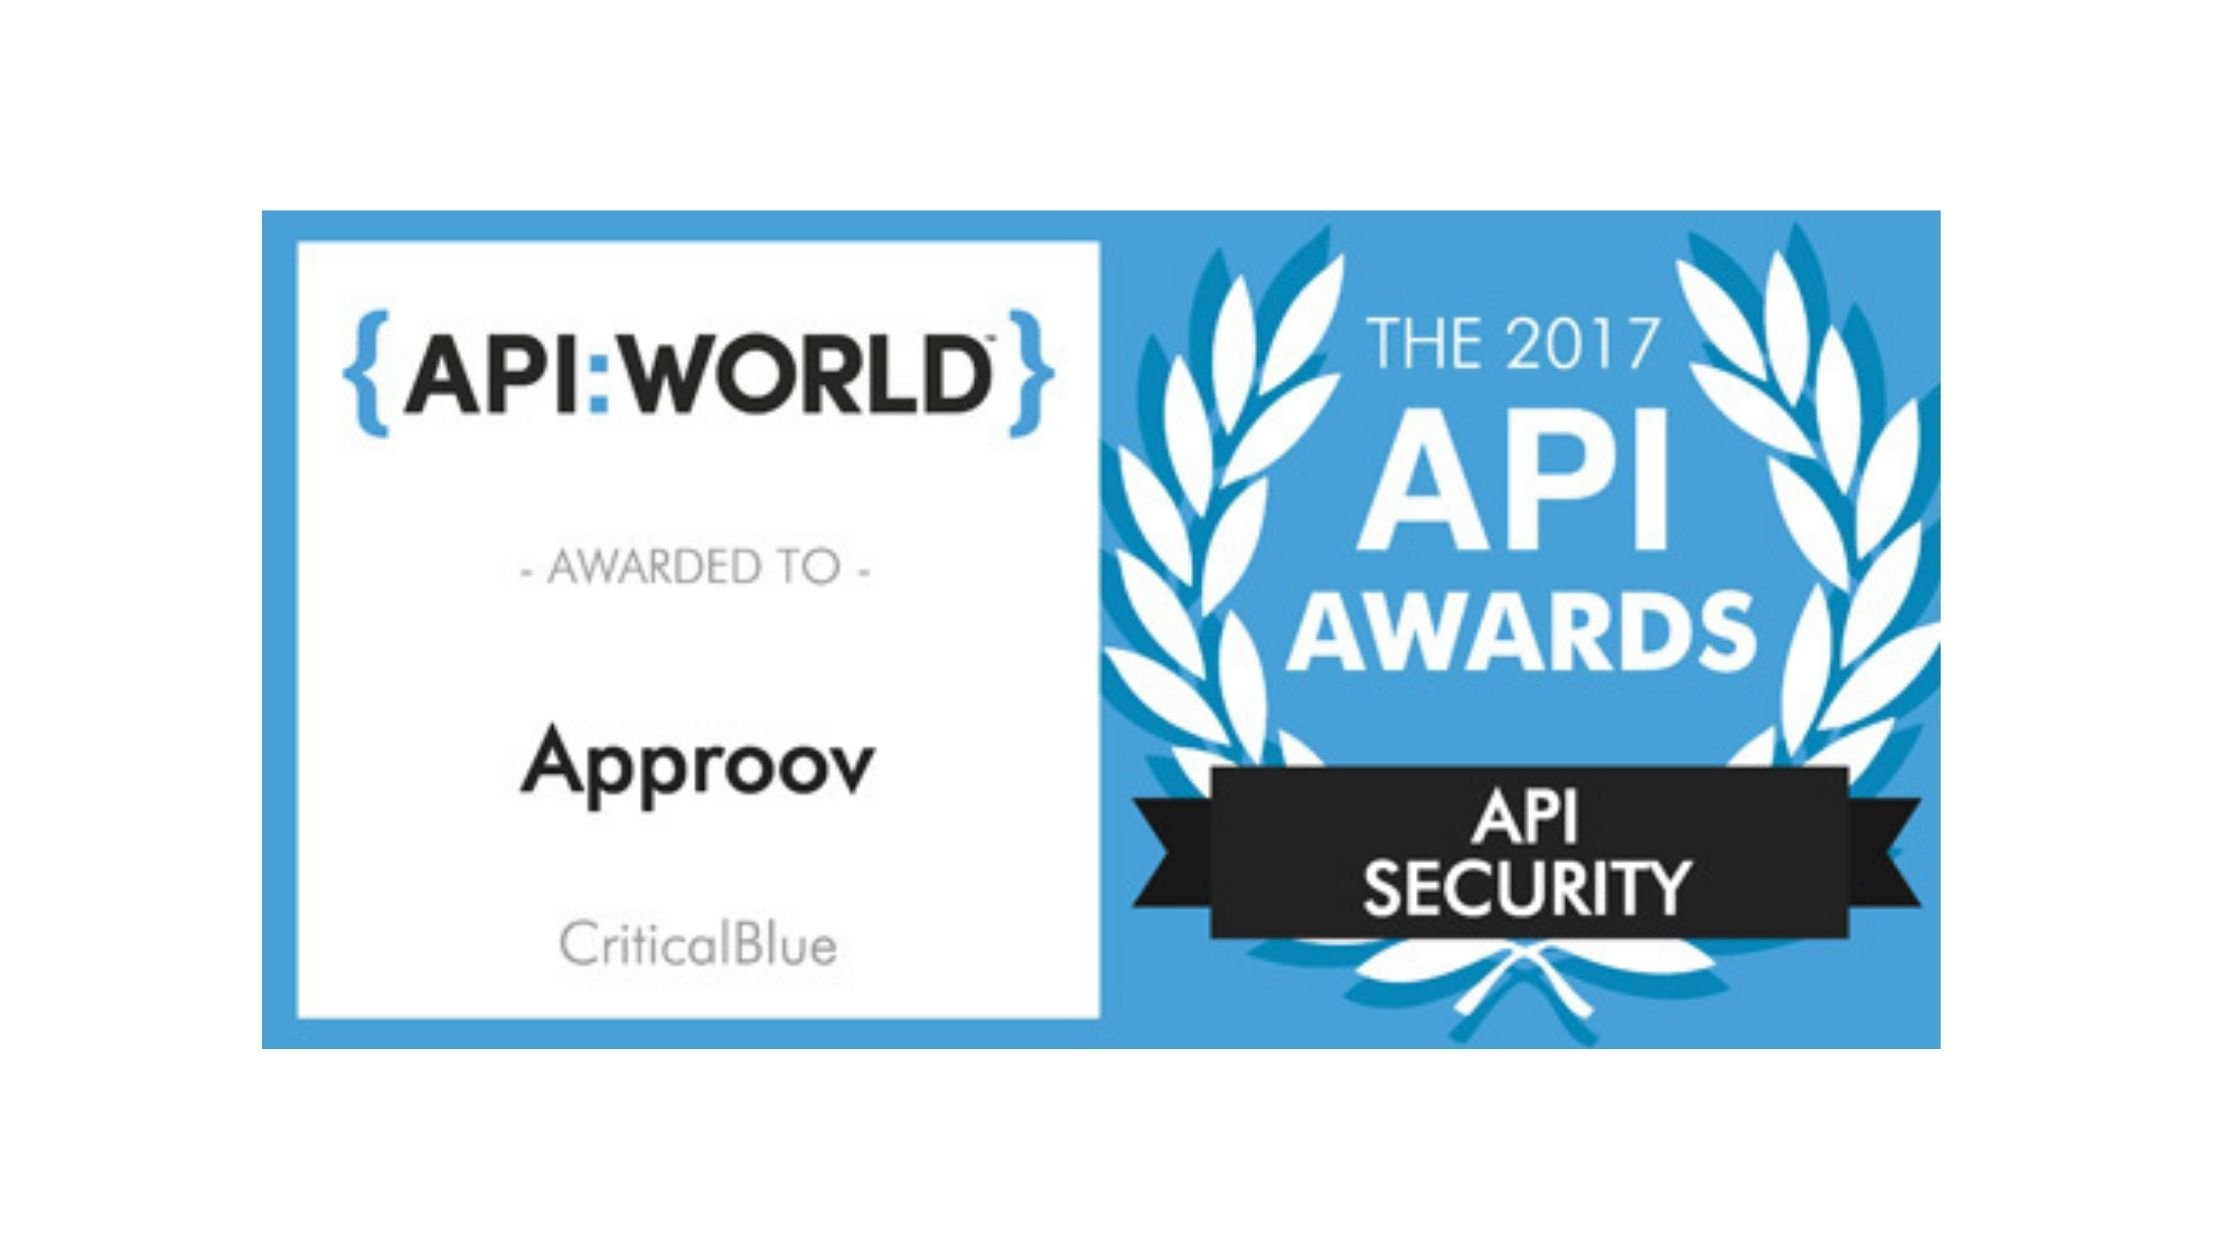 API World 2017 Awards badge